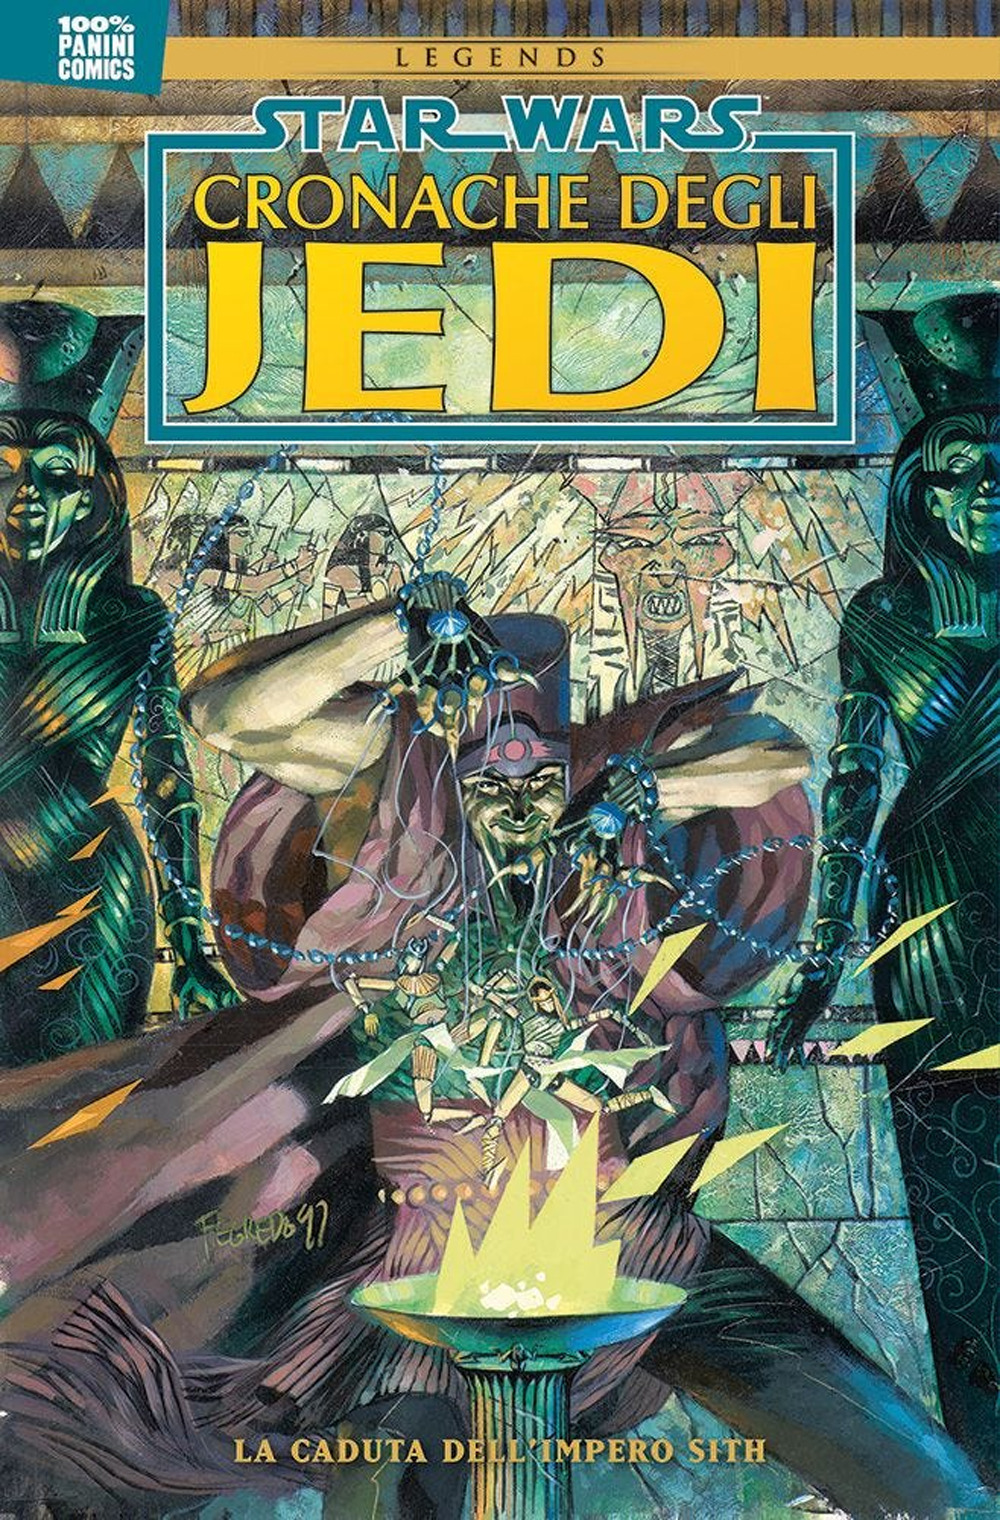 Cronache degli Jedi. Star Wars. Vol. 2: La caduta dell'impero Sith